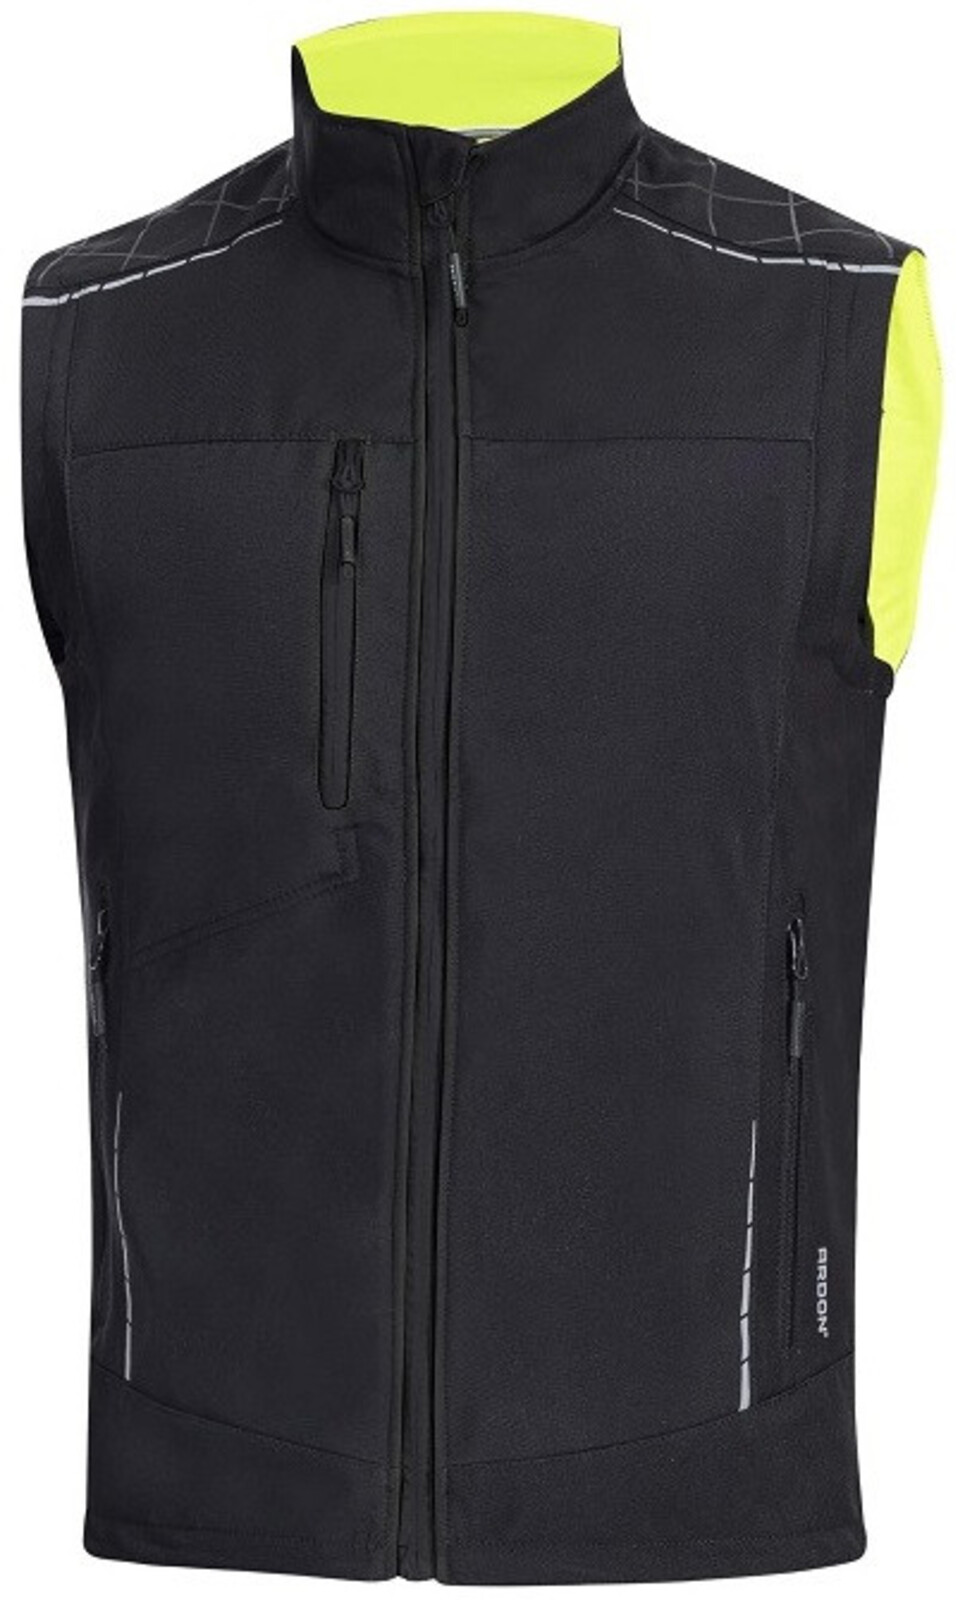 Pánska zimná softshellová vesta Ardon Vision - veľkosť: 4XL, farba: čierna/žltá